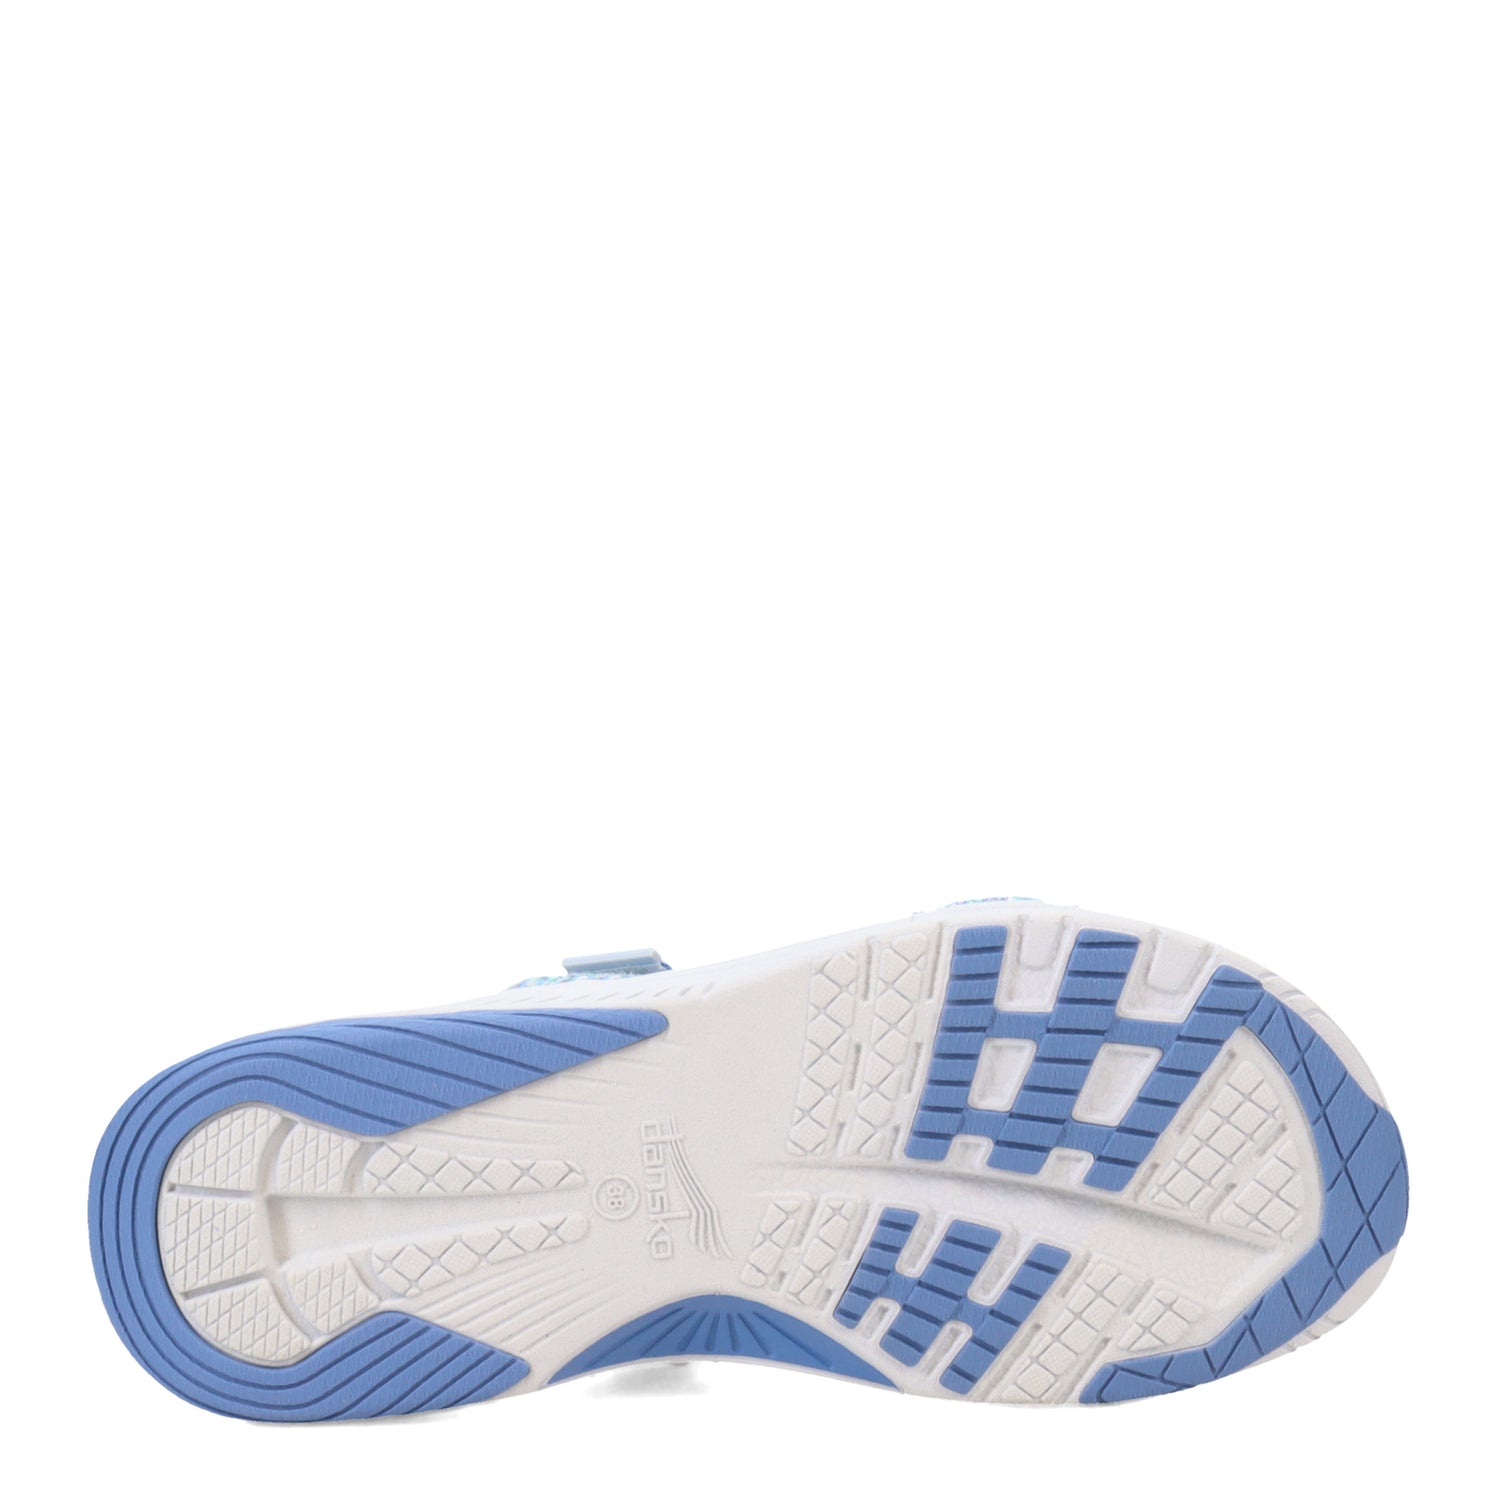 Peltz Shoes  Women's Dansko Rosette Sandal Blue 4916-545400